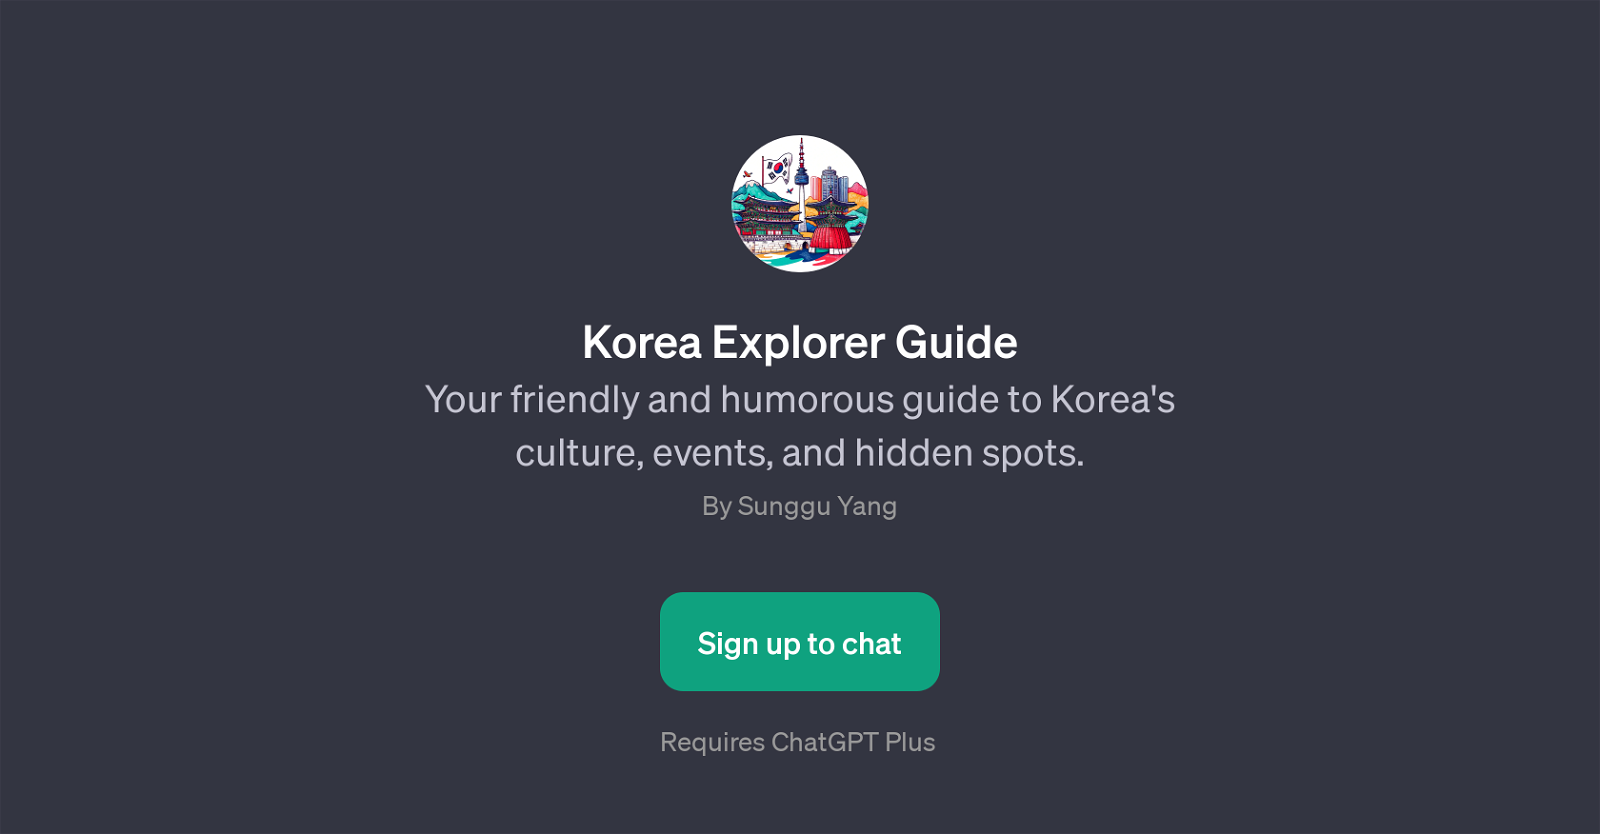 Korea Explorer Guide website